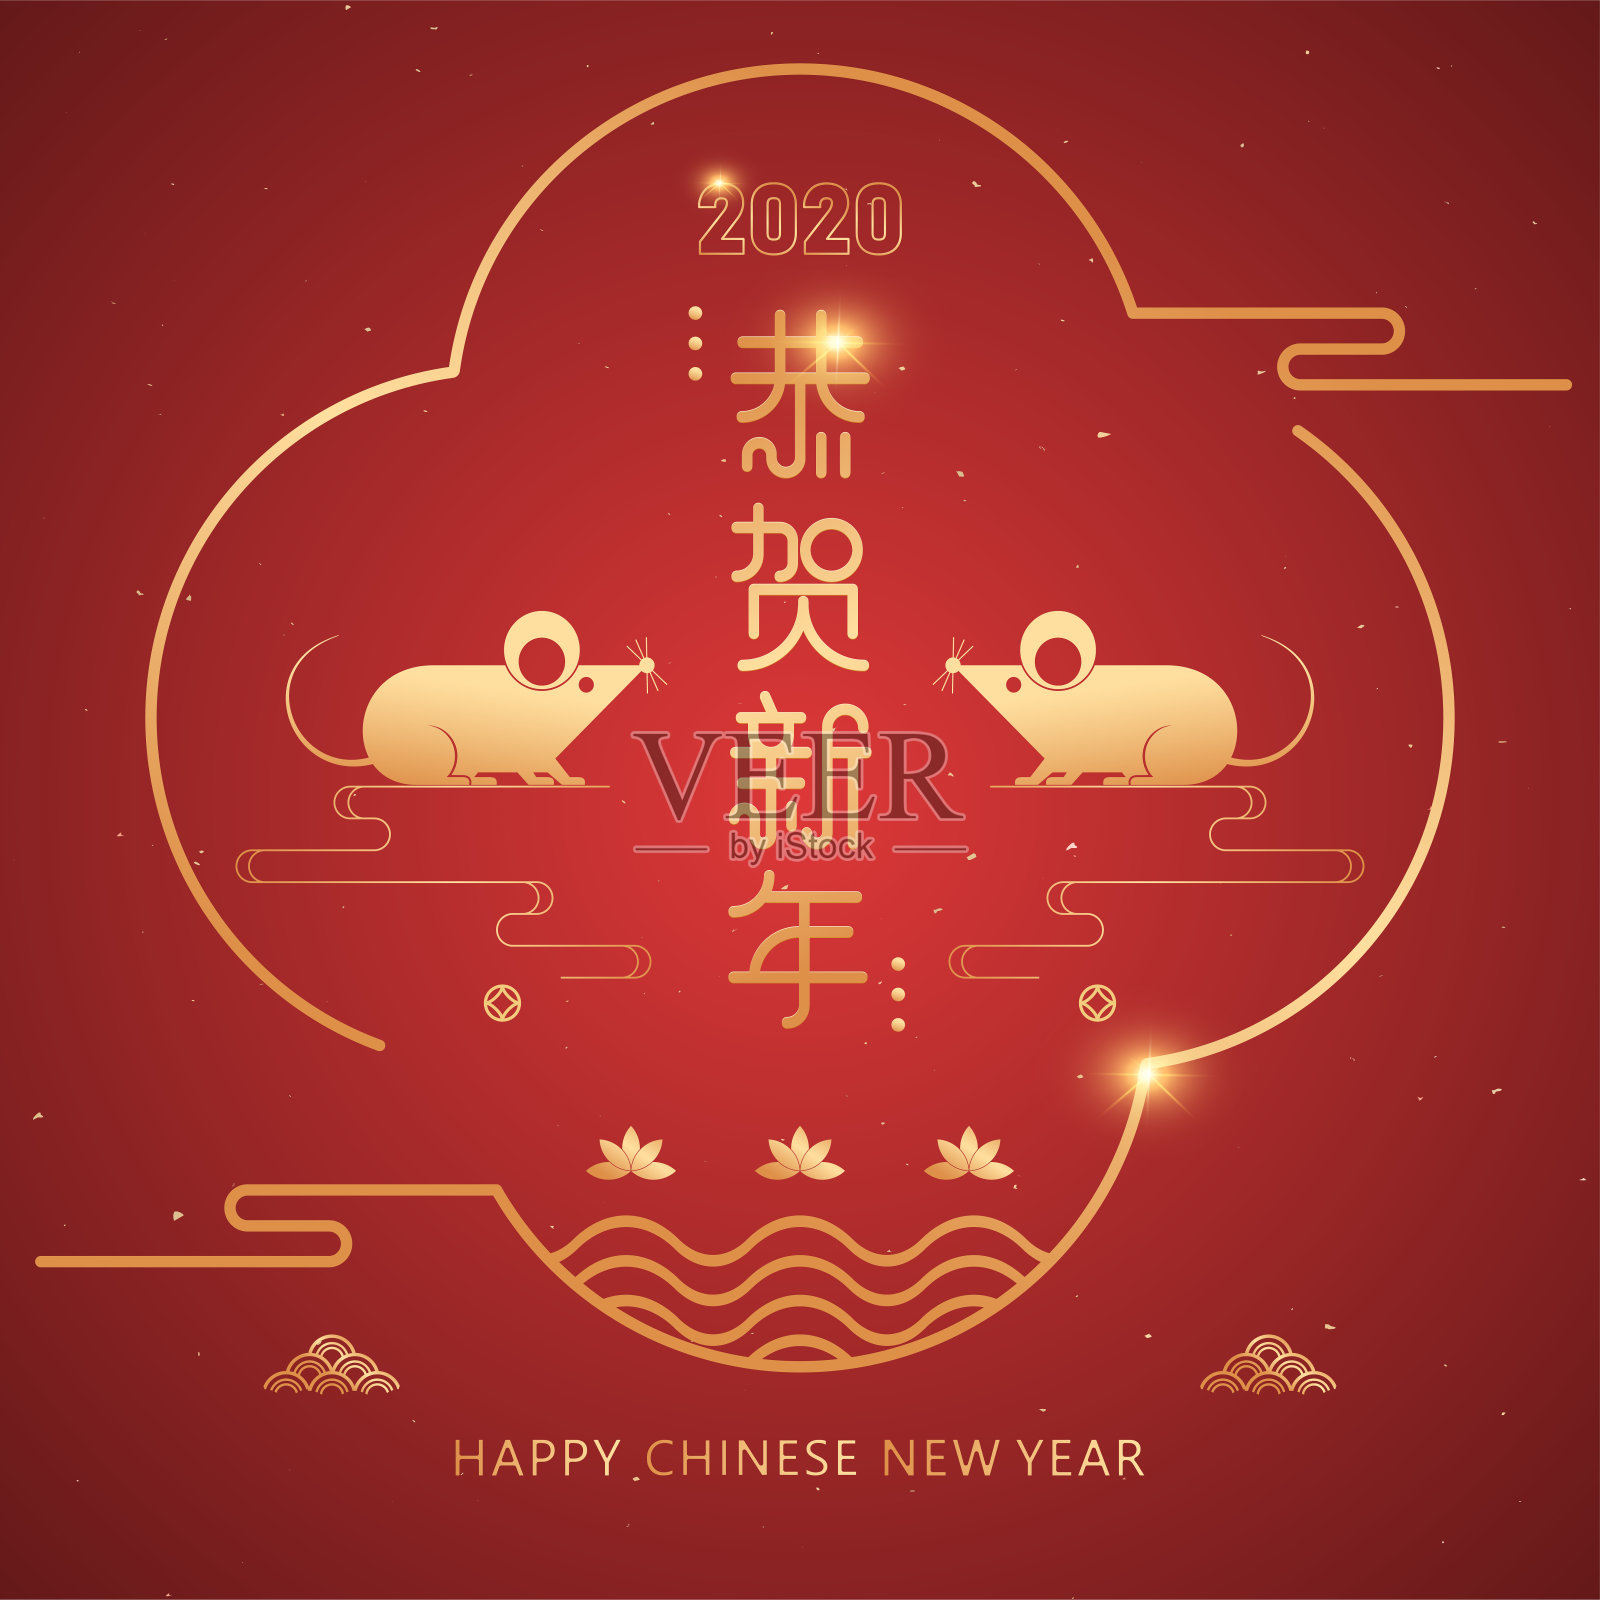 2020鼠年卡通插图。中国传统元素矢量插图，旗帜和封面，圆框与金色鼠标。汉字的意思是:共和新年设计模板素材